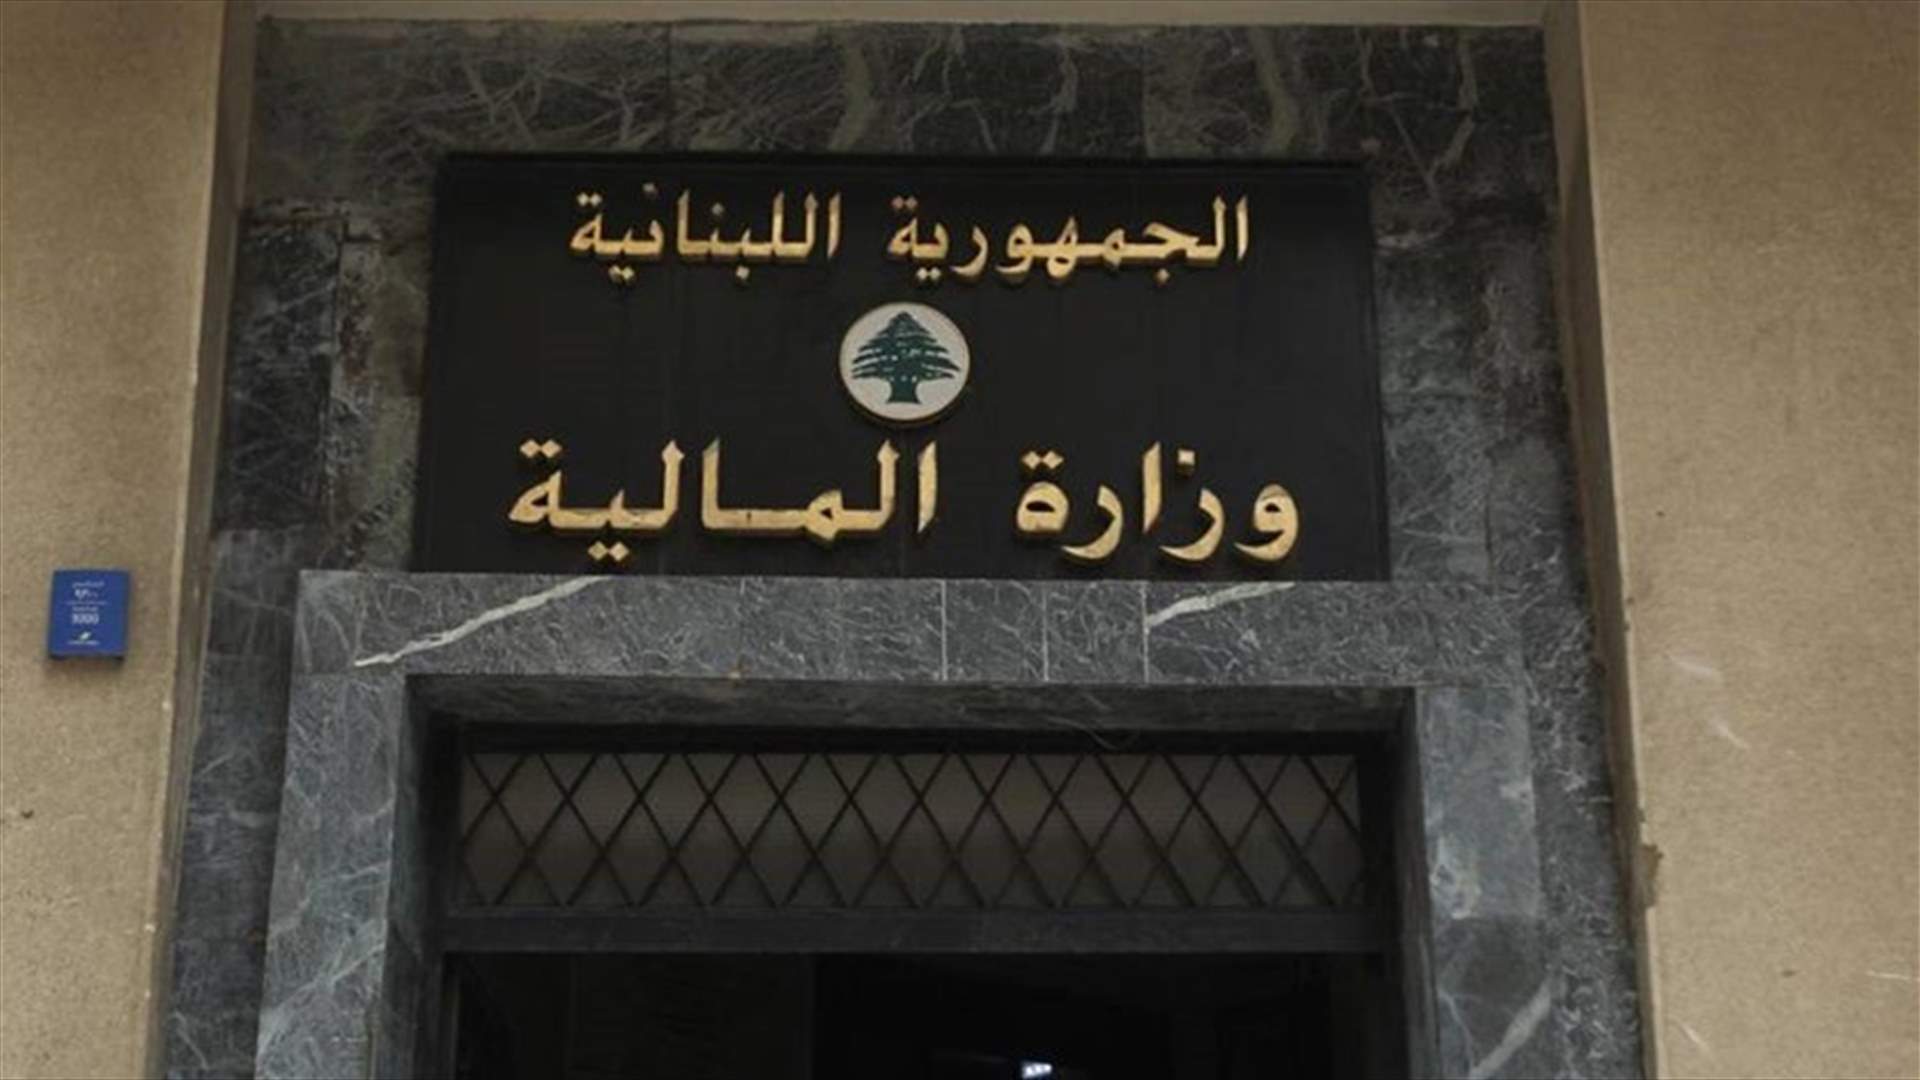 وزارة المالية تردّ على مؤسسة كهرباء لبنان...